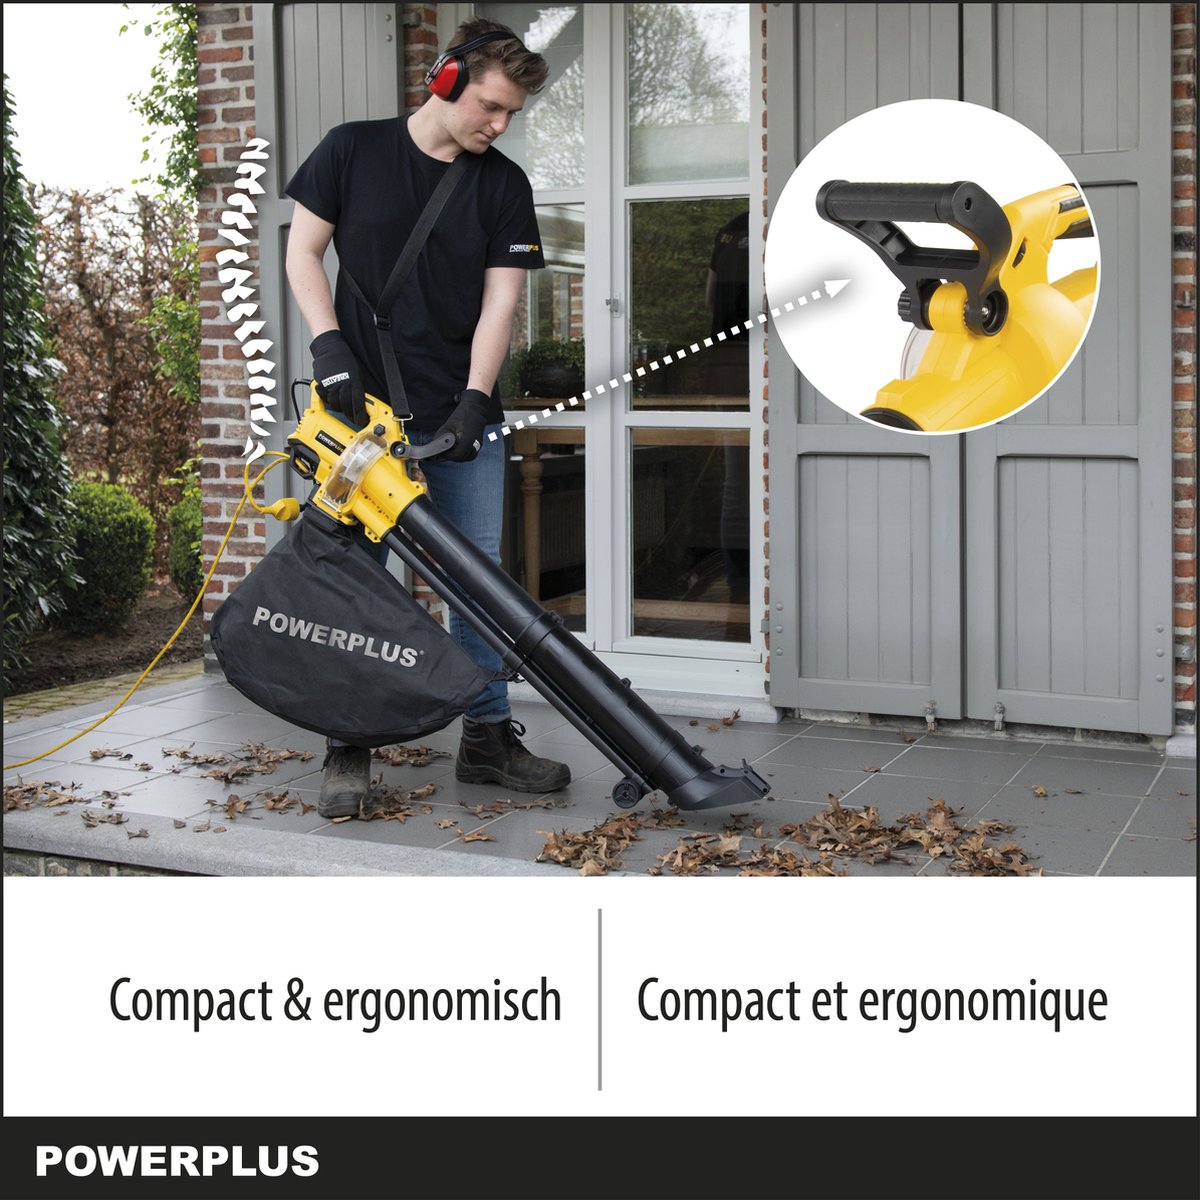 Powerplus - Dual power garden - POWDPG75270 - Leaf blower/vacuum